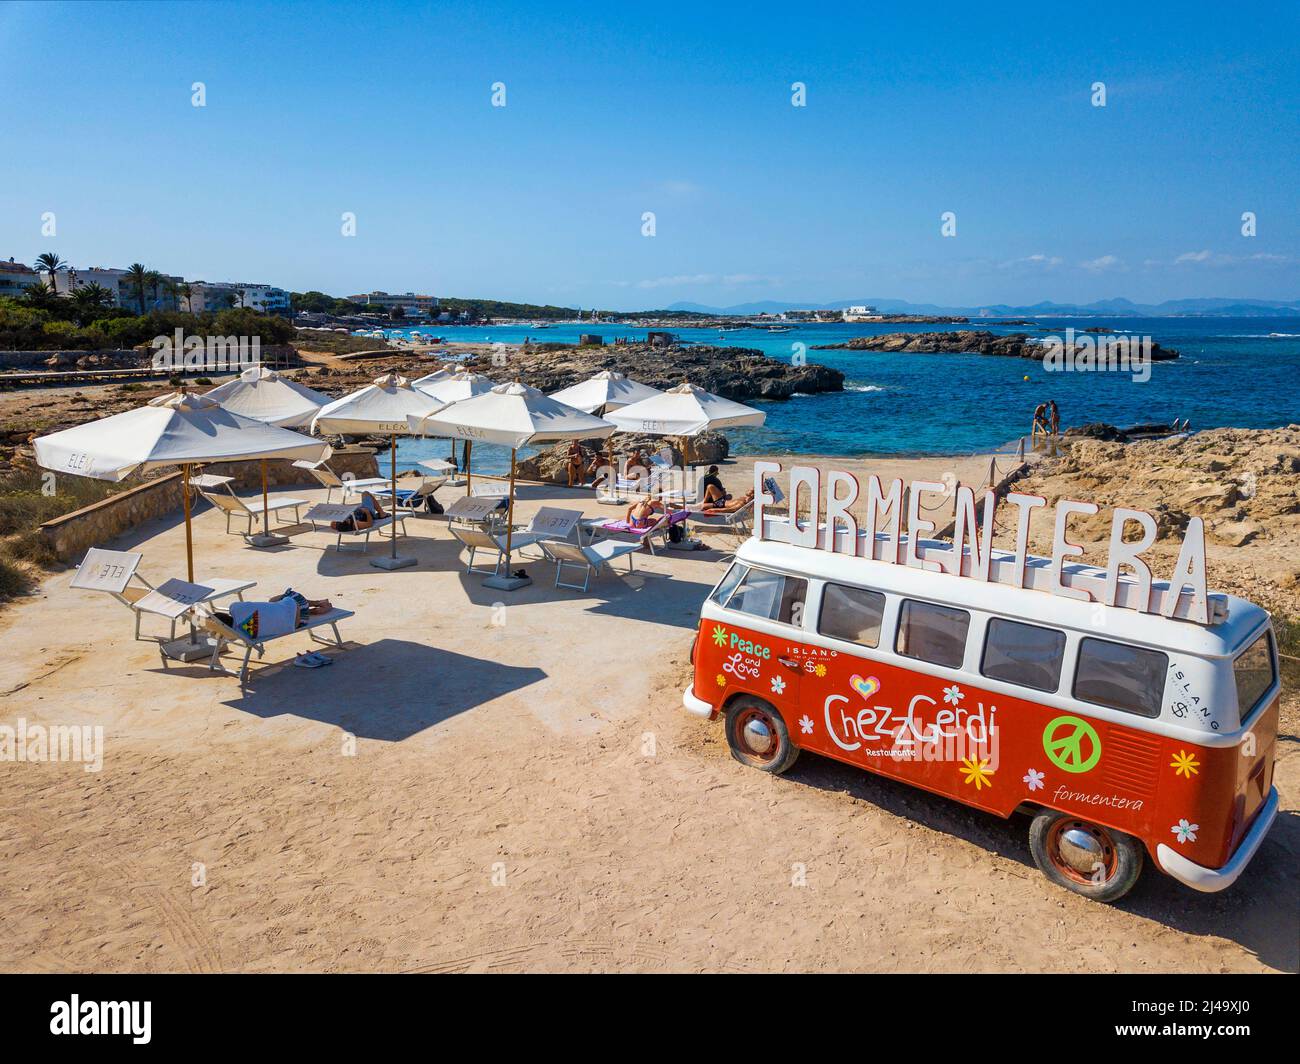 Clásico Volkswagen rojo y blanco Tipo 2 camioneta camper en la playa Es Pujols, Chezz Gerdi bar restaurante de playa de publicidad, Islas Balearis, Formentera, Spa Foto de stock